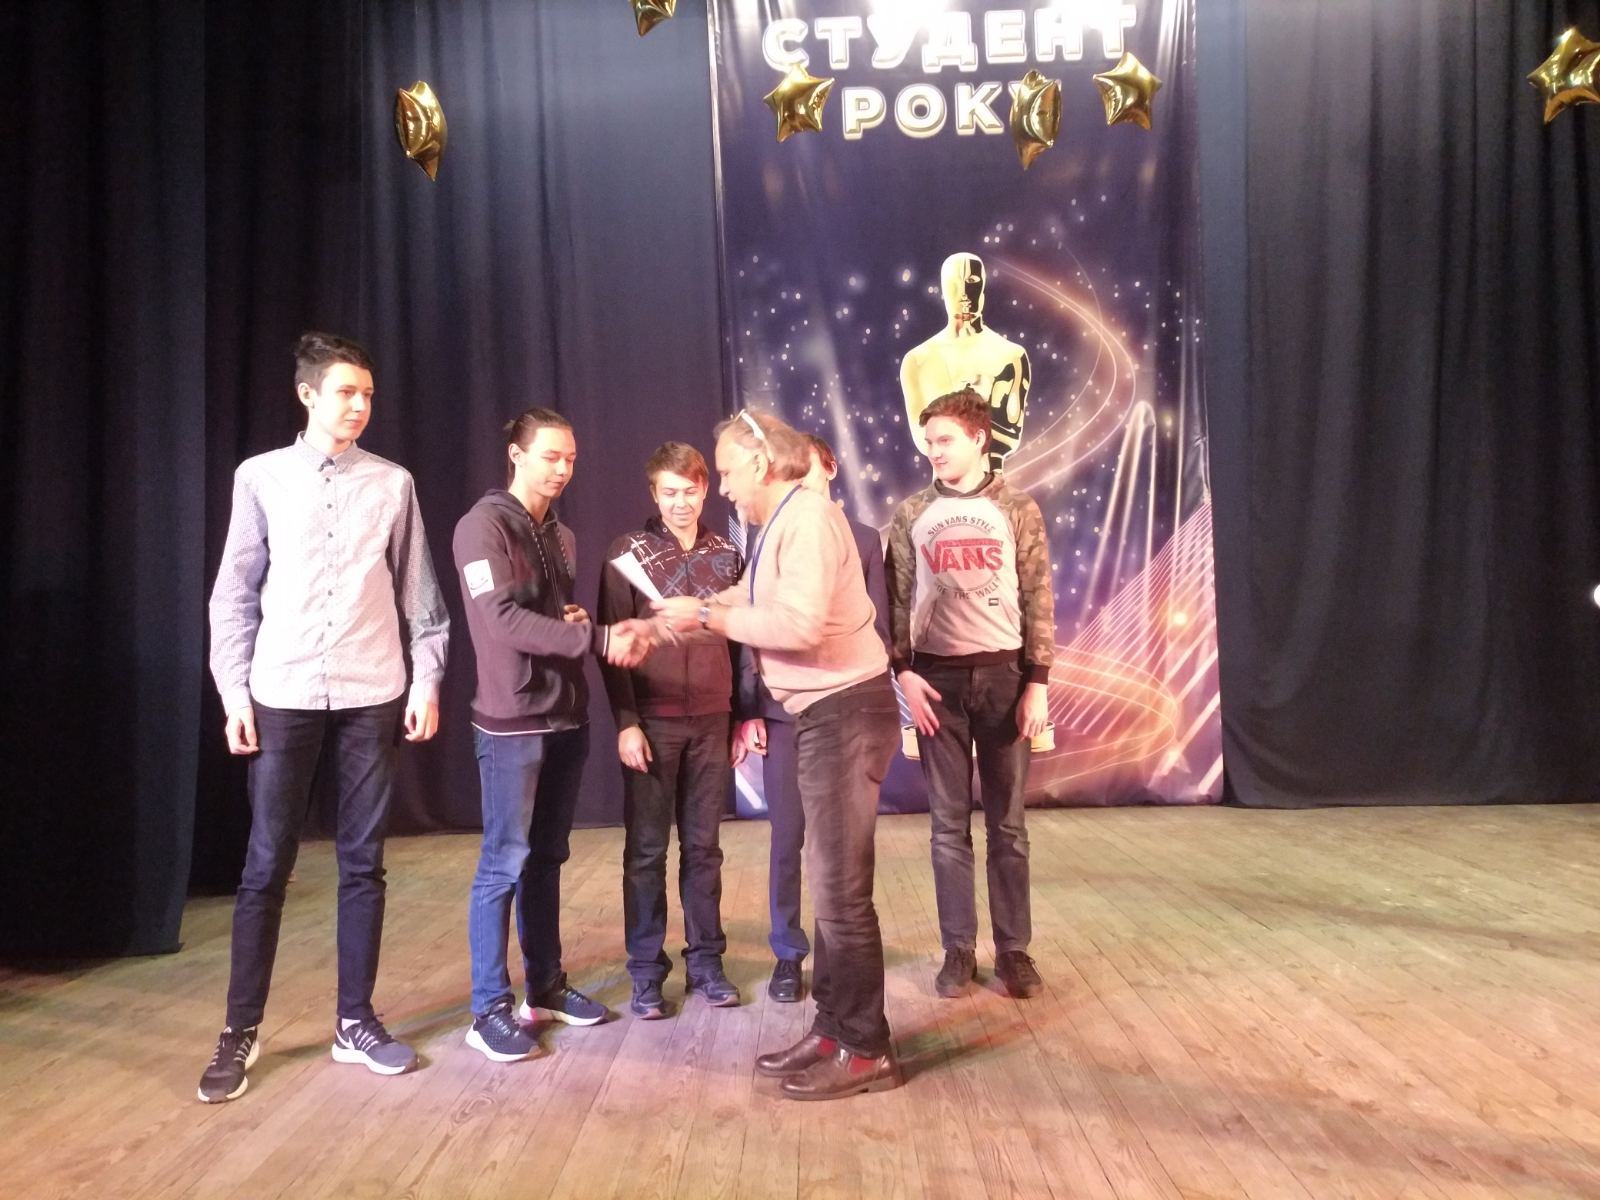 Житомирські юні програмісти здобули перемогу на Всеукраїнському турнірі юних інформатиків 